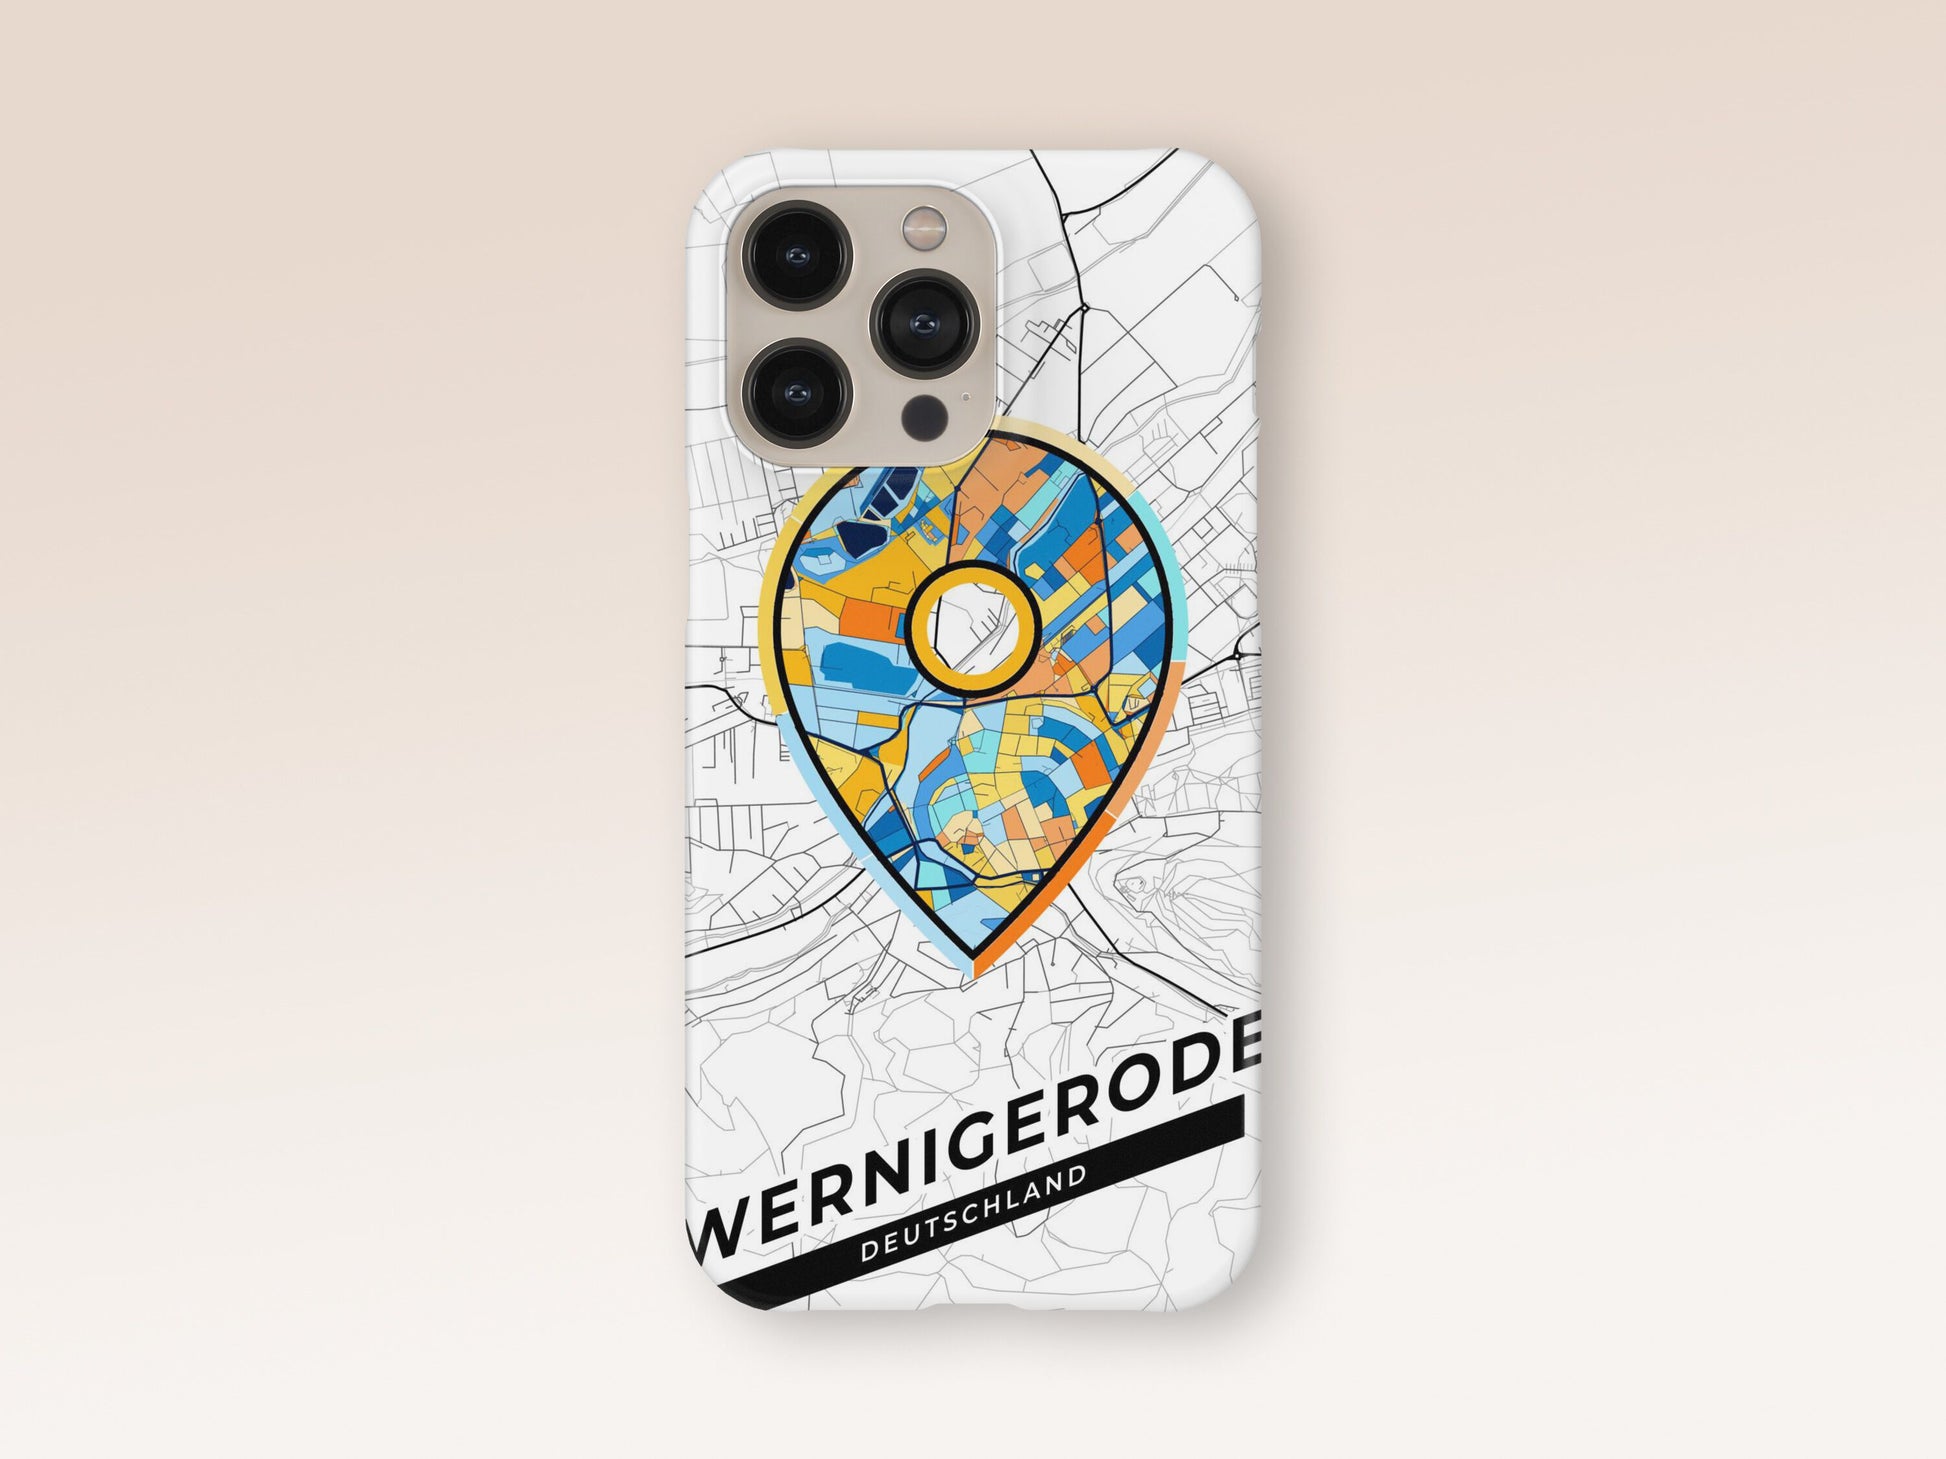 Wernigerode Deutschland slim phone case with colorful icon 1